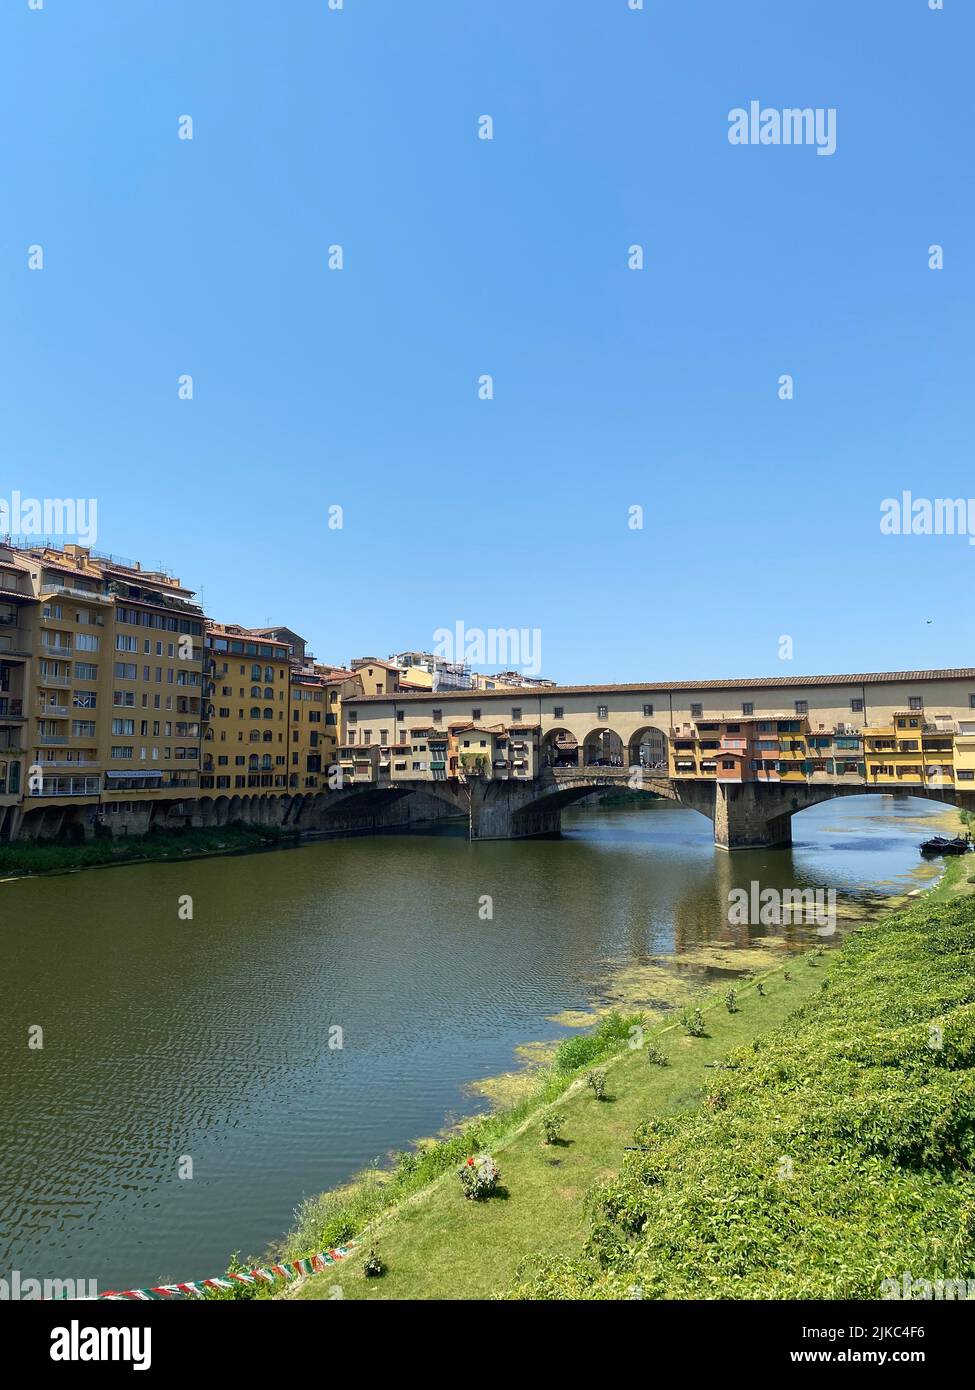 Die berühmte Ponte Vecchio, mittelalterliche Bogenbrücke über den Arno, in Florenz, Italien Stockfoto